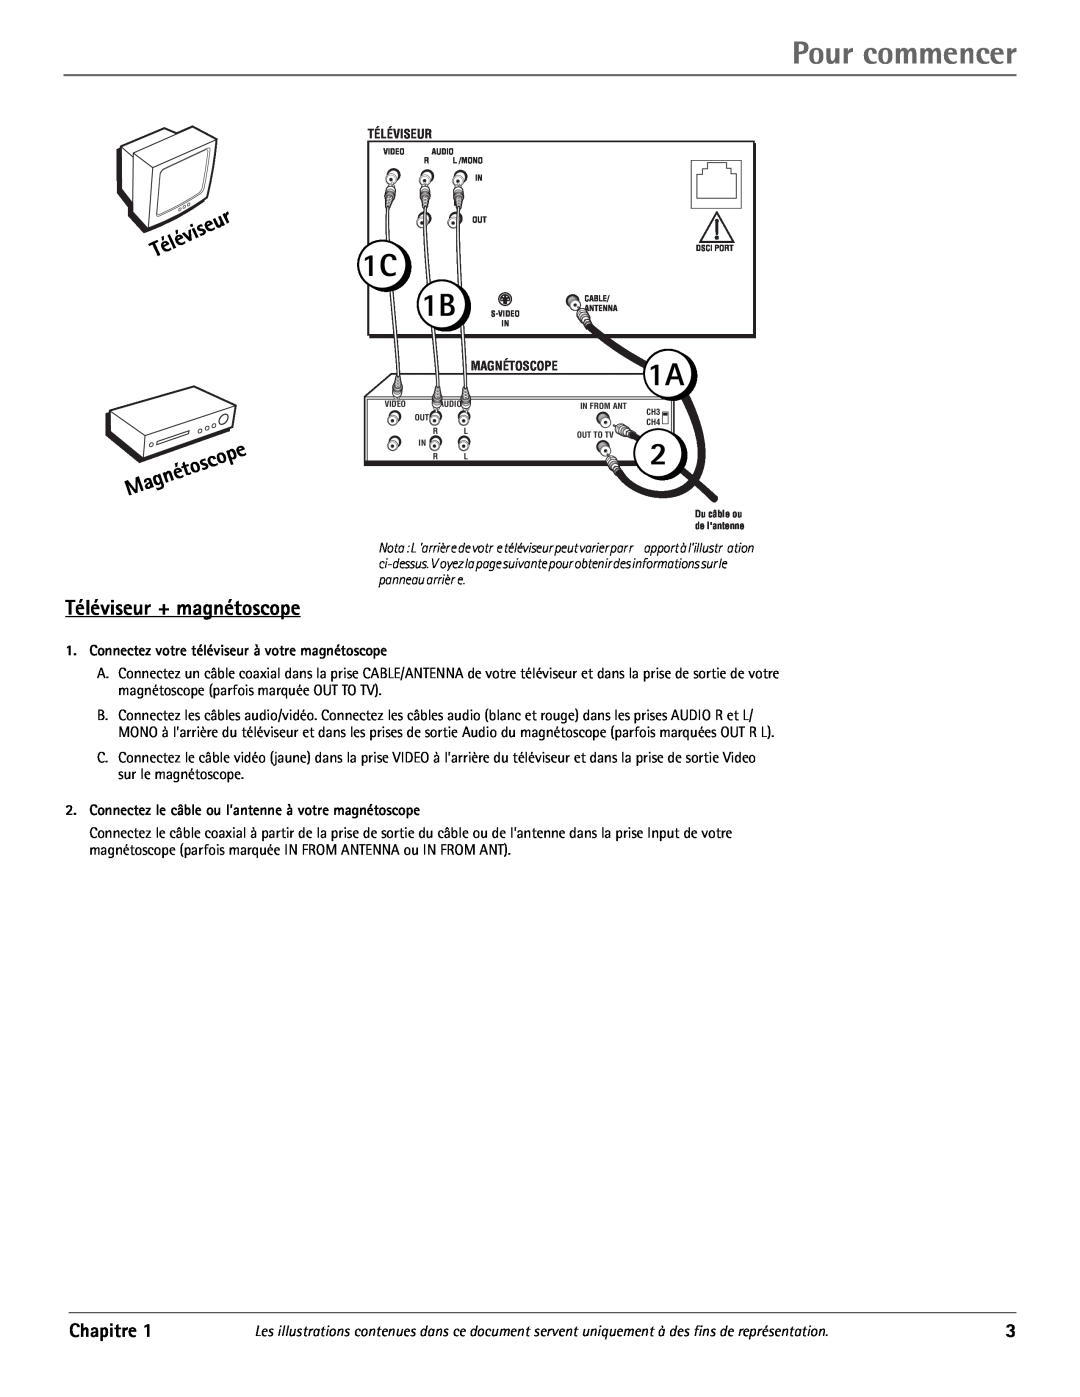 RCA J20542 manual Pour commencer, Téléviseur + magnétoscope, Chapitre, étoscope Magn 